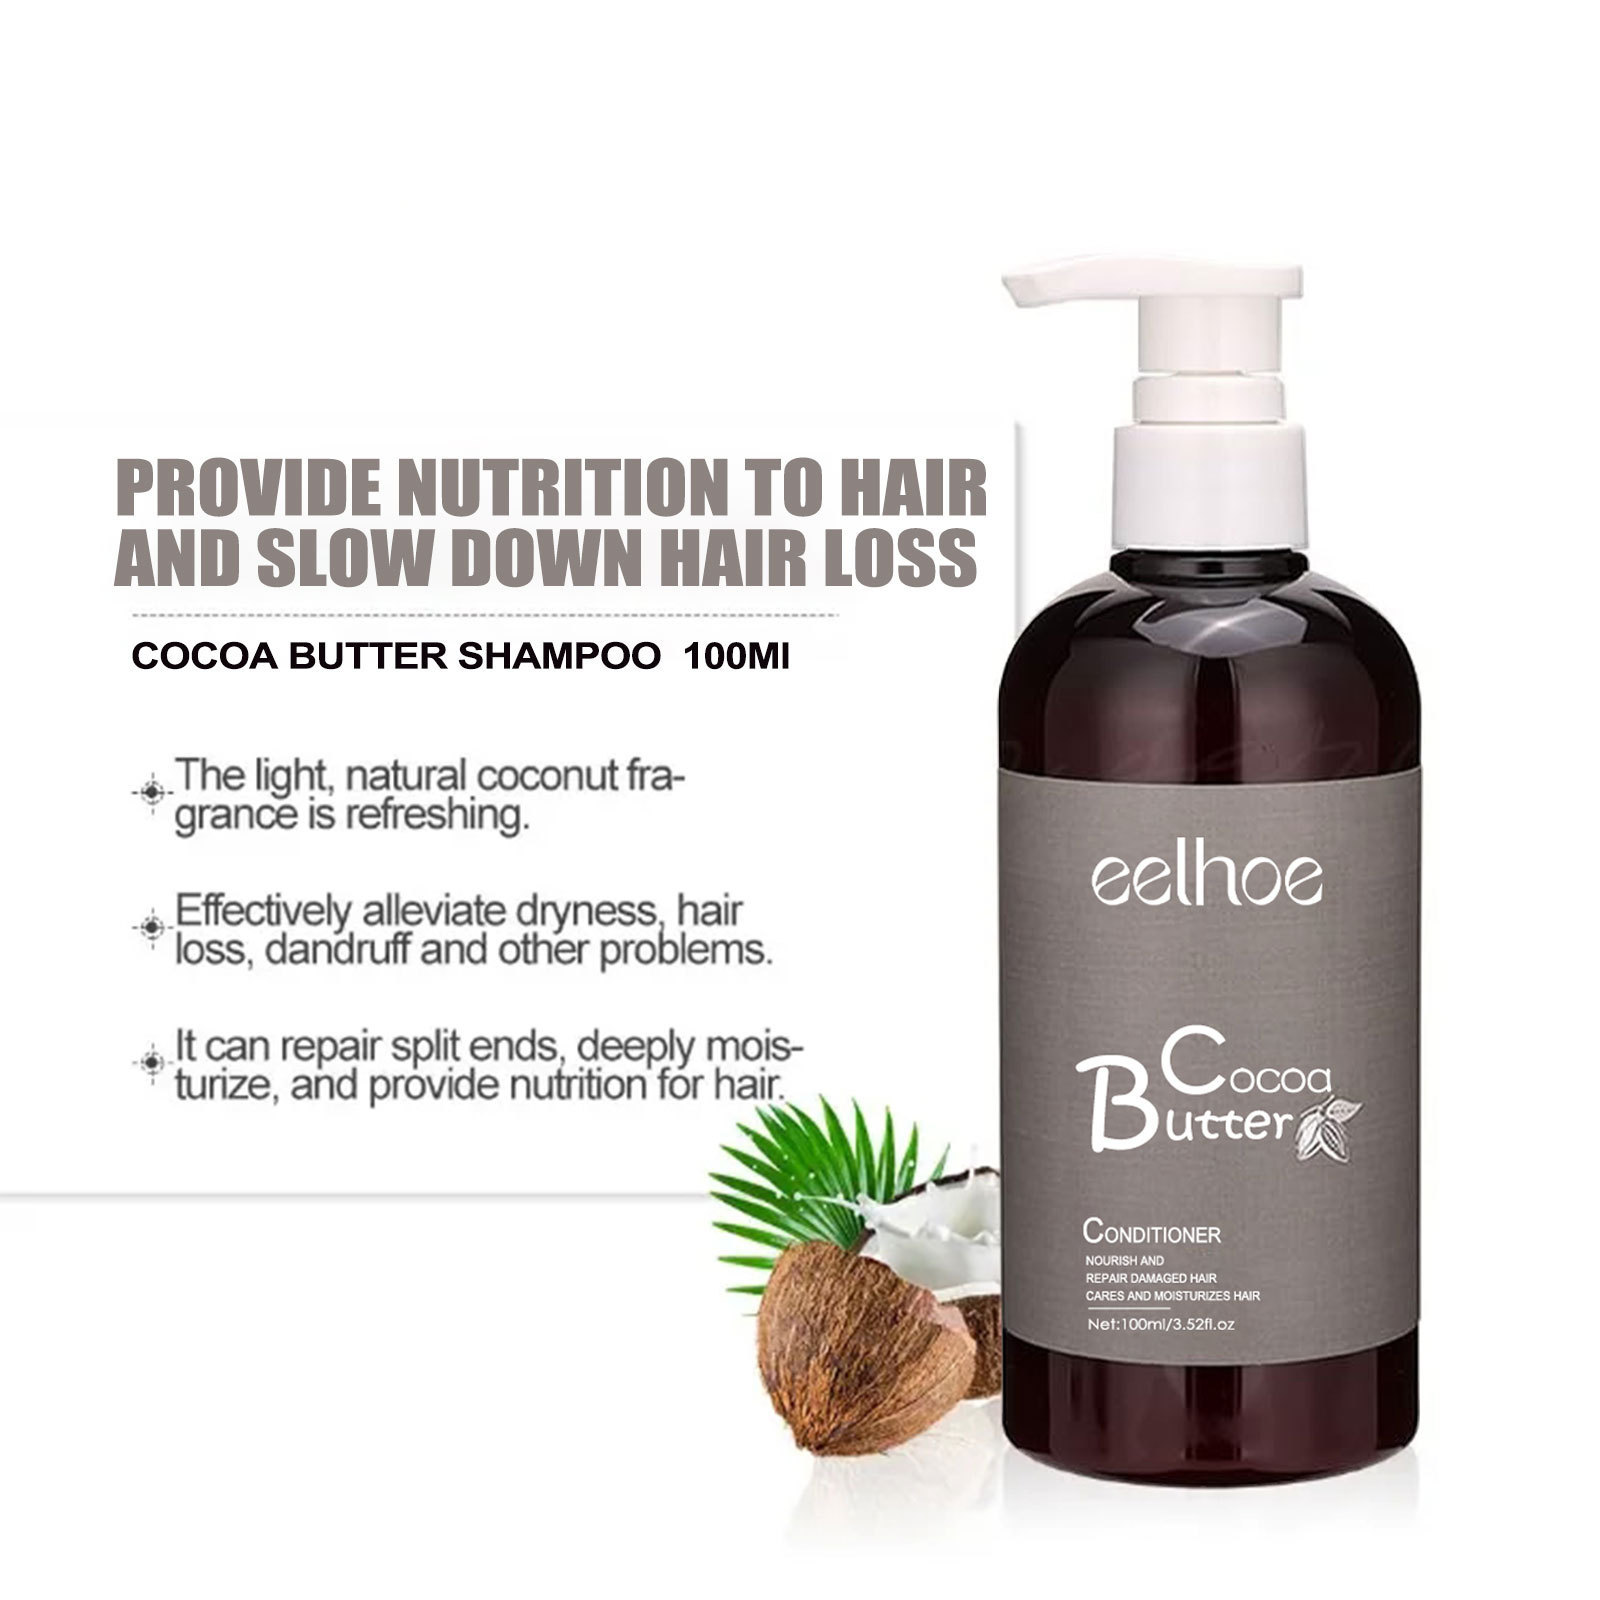 Revitalizing Eelhoe Cocoa Butter Shampoo: Intense Moisture For Lustrous Locks